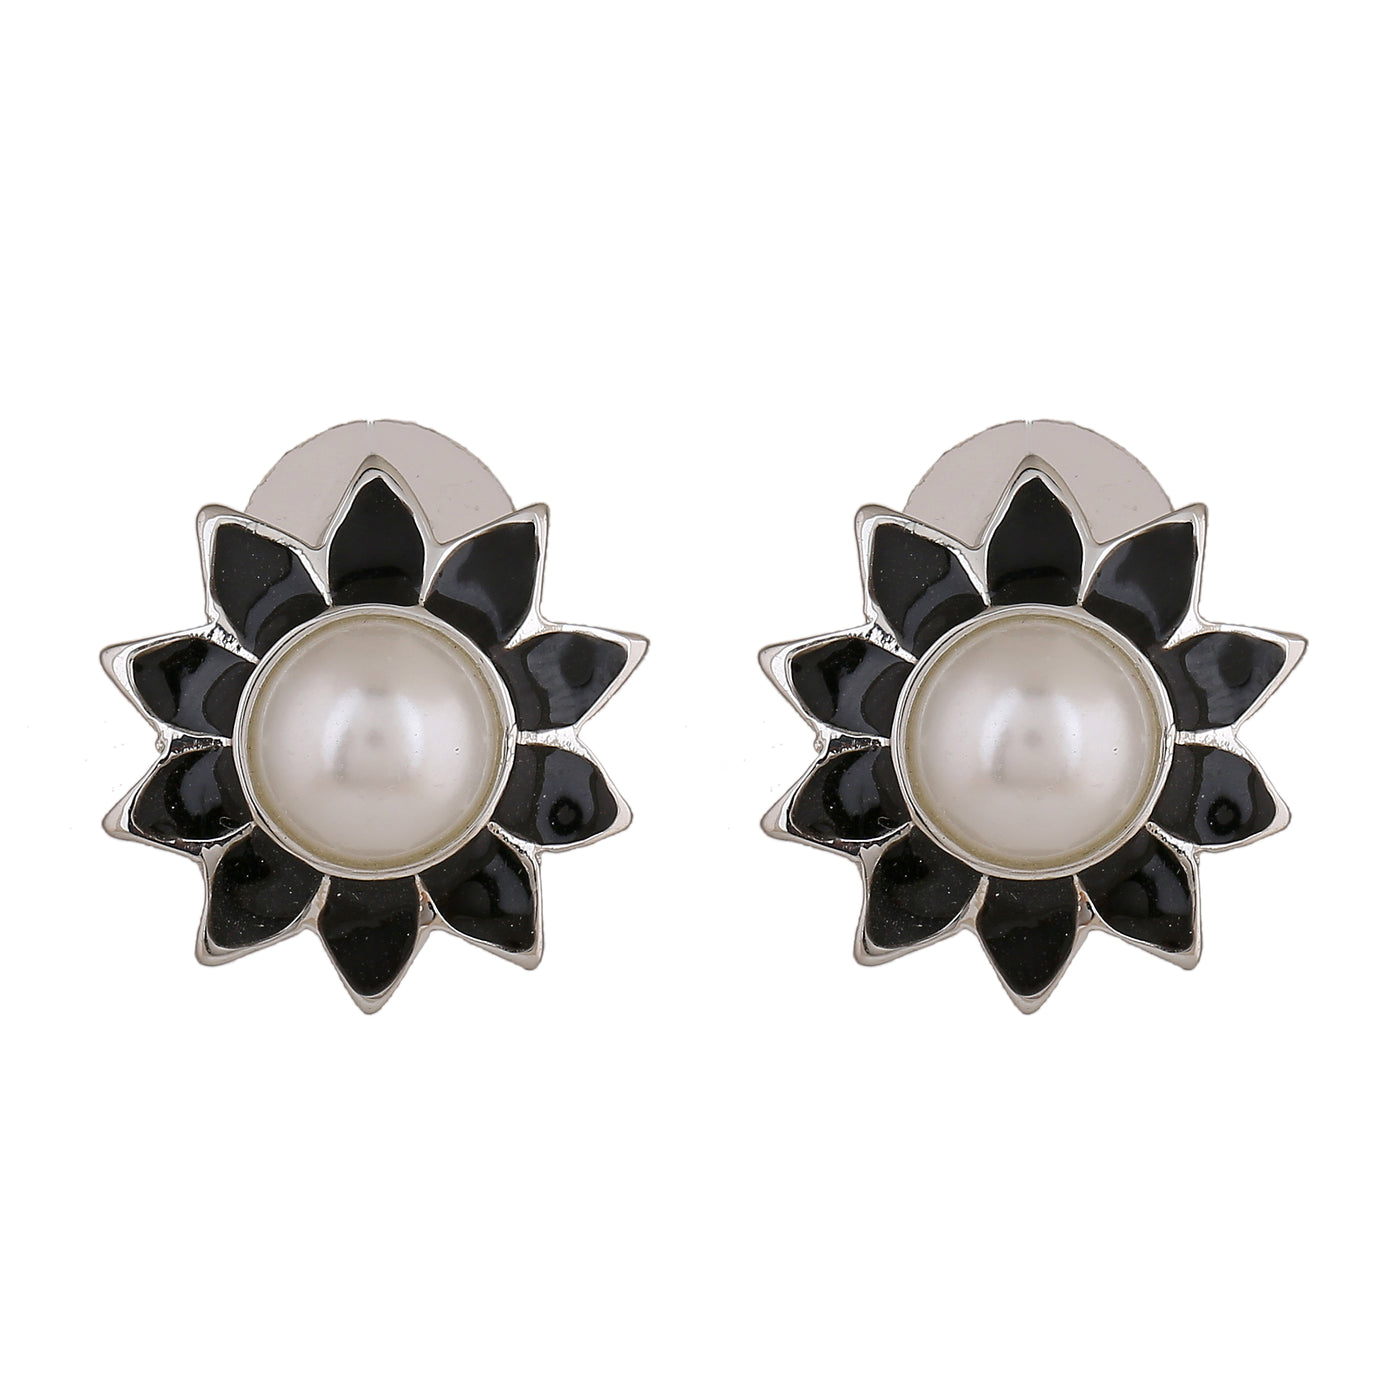 Estele Rhodium Plated Glowing Meenakari Pearl Stud Earrings with Black Enamel for Women